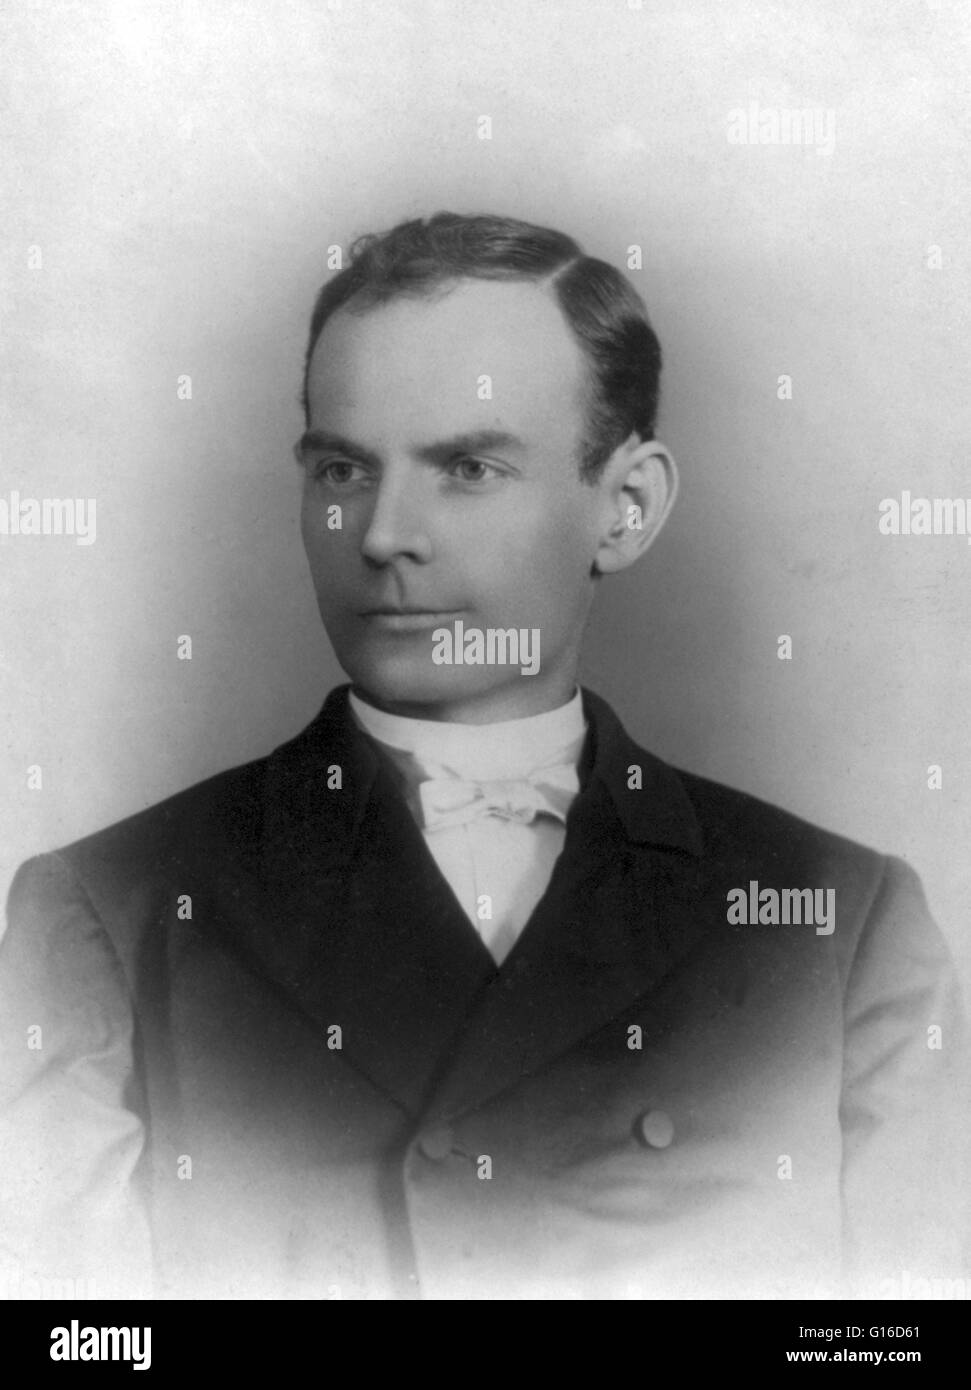 Robert Ewing 'Bob' jüngere (29. Oktober 1853 - 16. September 1889) war ein US-amerikanischer Verbrecher und Outlaw, der jüngere Bruder von Cole, Jim und John Younger. Er war Mitglied der James-Younger-Bande. Während des Bürgerkrieges Ritt seine Brüder Cole und Jim mit Stockfoto